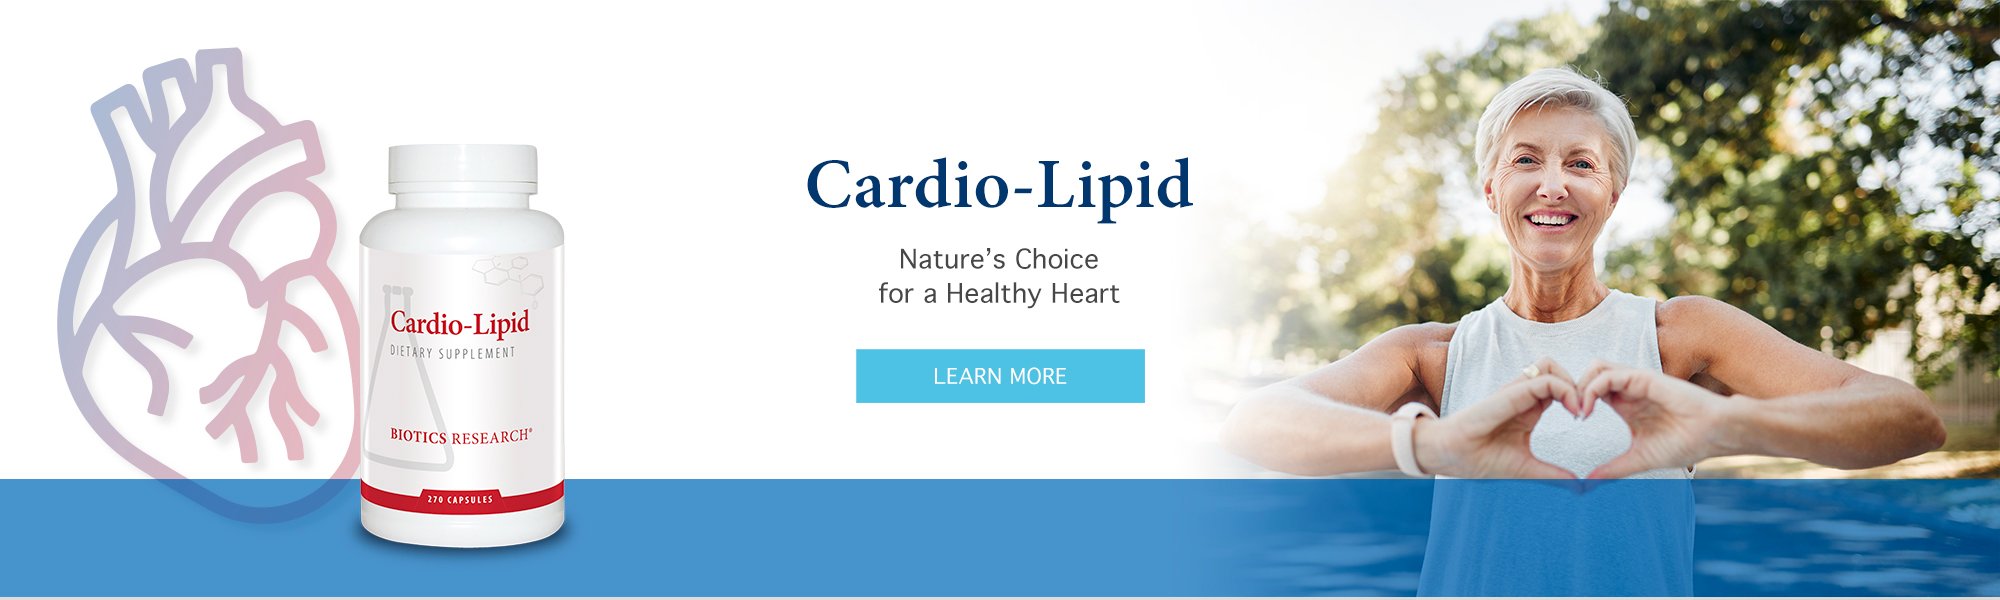 CardioLipid_Banner